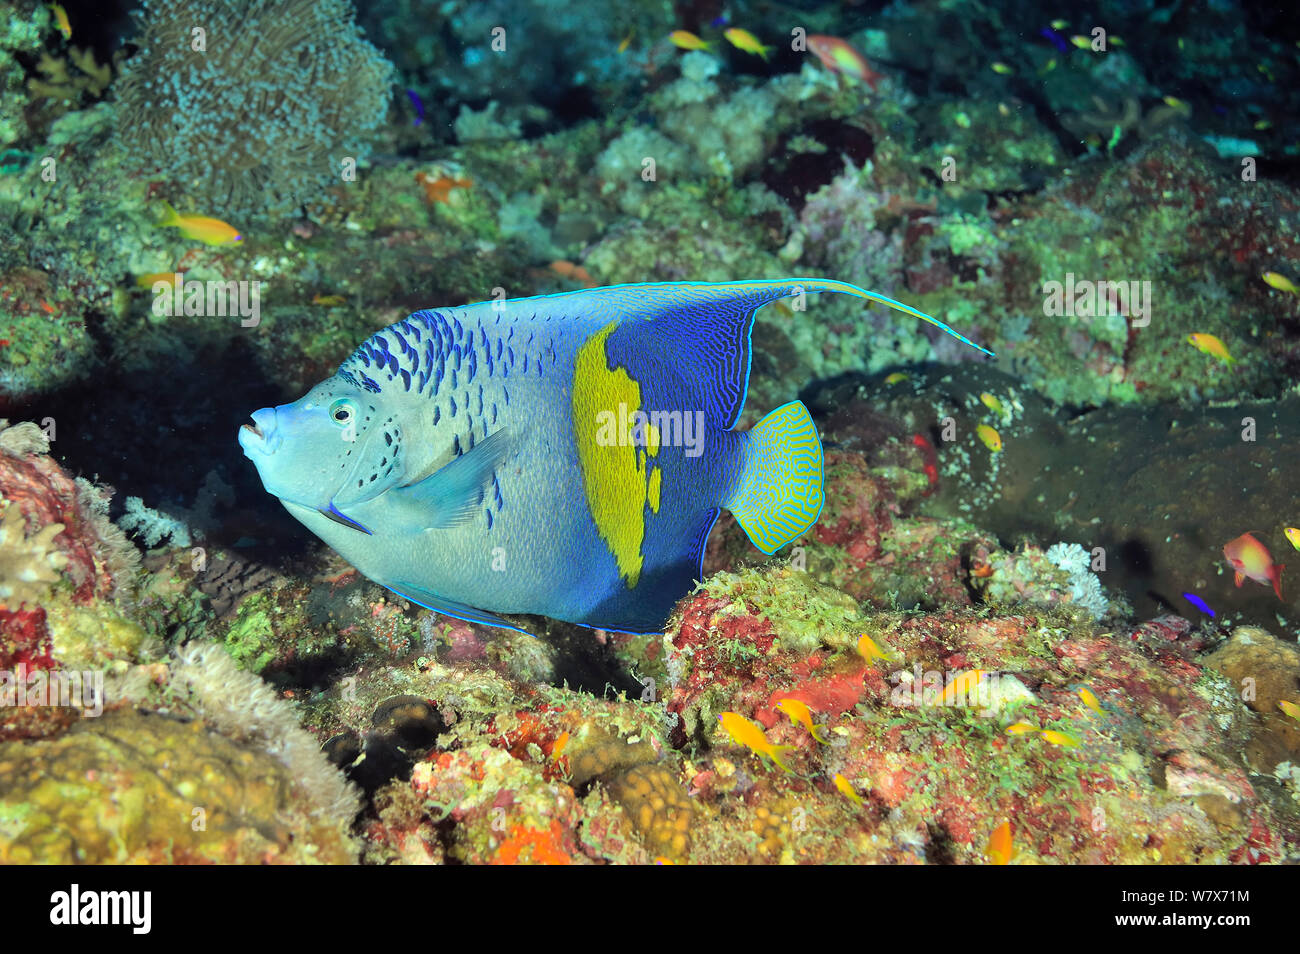 Angelfish Pomacanthus maculosus (Arabe) sur le récif, le Soudan. Mer Rouge. Banque D'Images